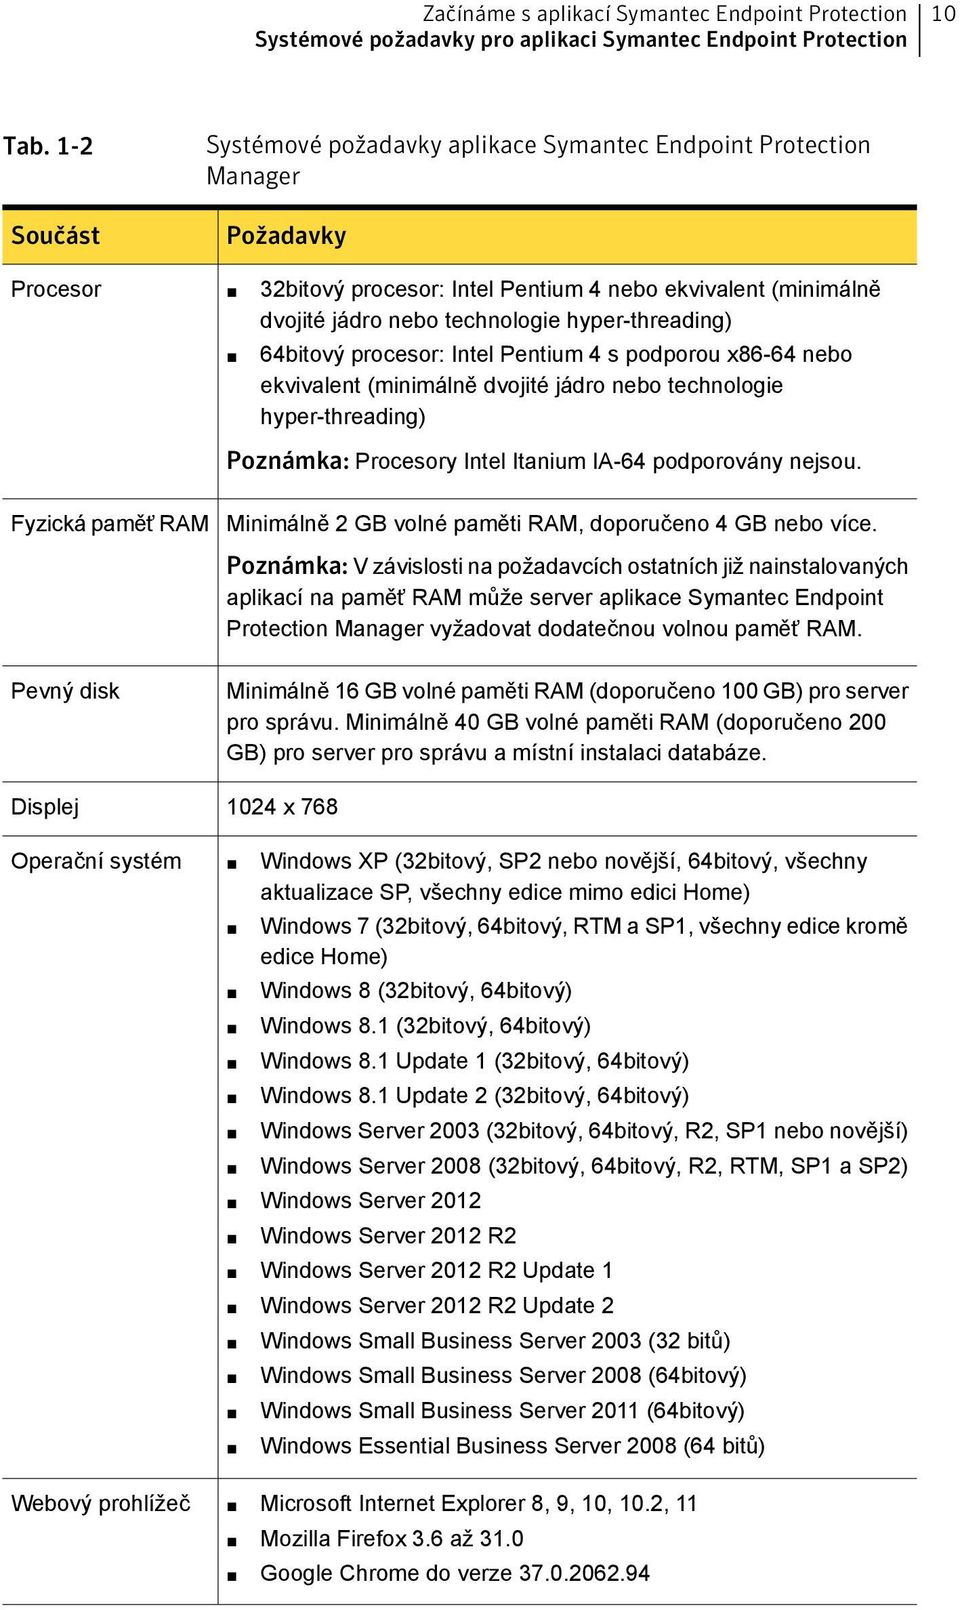 hyper-threading) 64bitový procesor: Intel Pentium 4 s podporou x86-64 nebo ekvivalent (minimálně dvojité jádro nebo technologie hyper-threading) Poznámka: Procesory Intel Itanium IA-64 podporovány